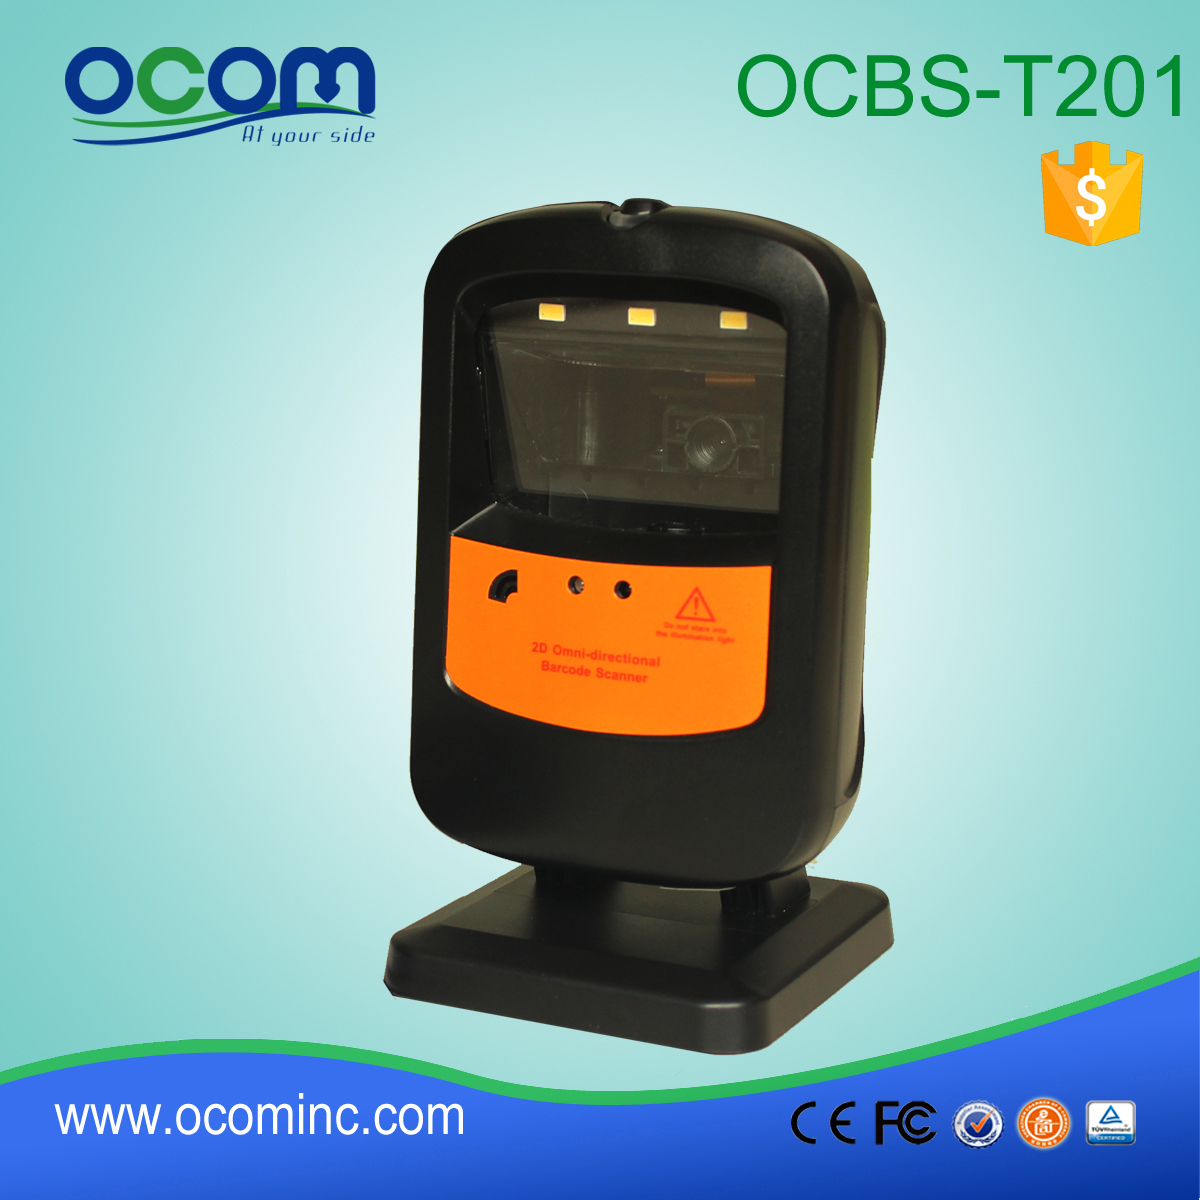 OCBs-T201: omnidirecionais barcode scanner fornecedores, módulo leitor de código de barras